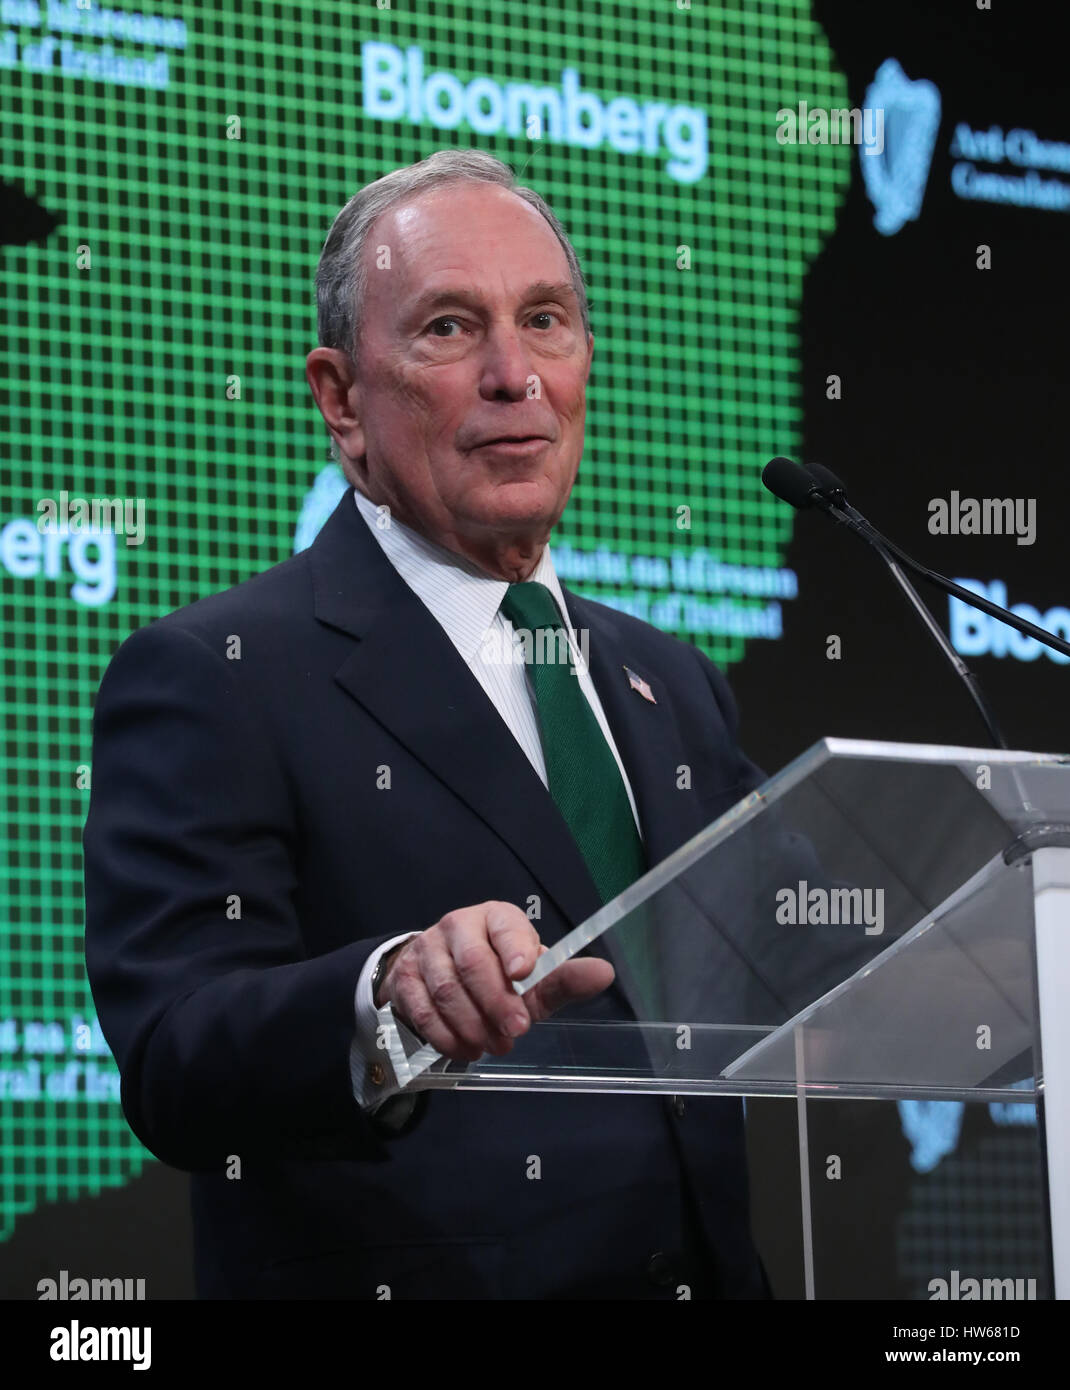 L'ex sindaco di New York Michael Bloomberg parlando prima di Taoiseach Enda Kenny personale di indirizzamento al quartier generale di Bloomberg a New York STATI UNITI D'AMERICA. Foto Stock